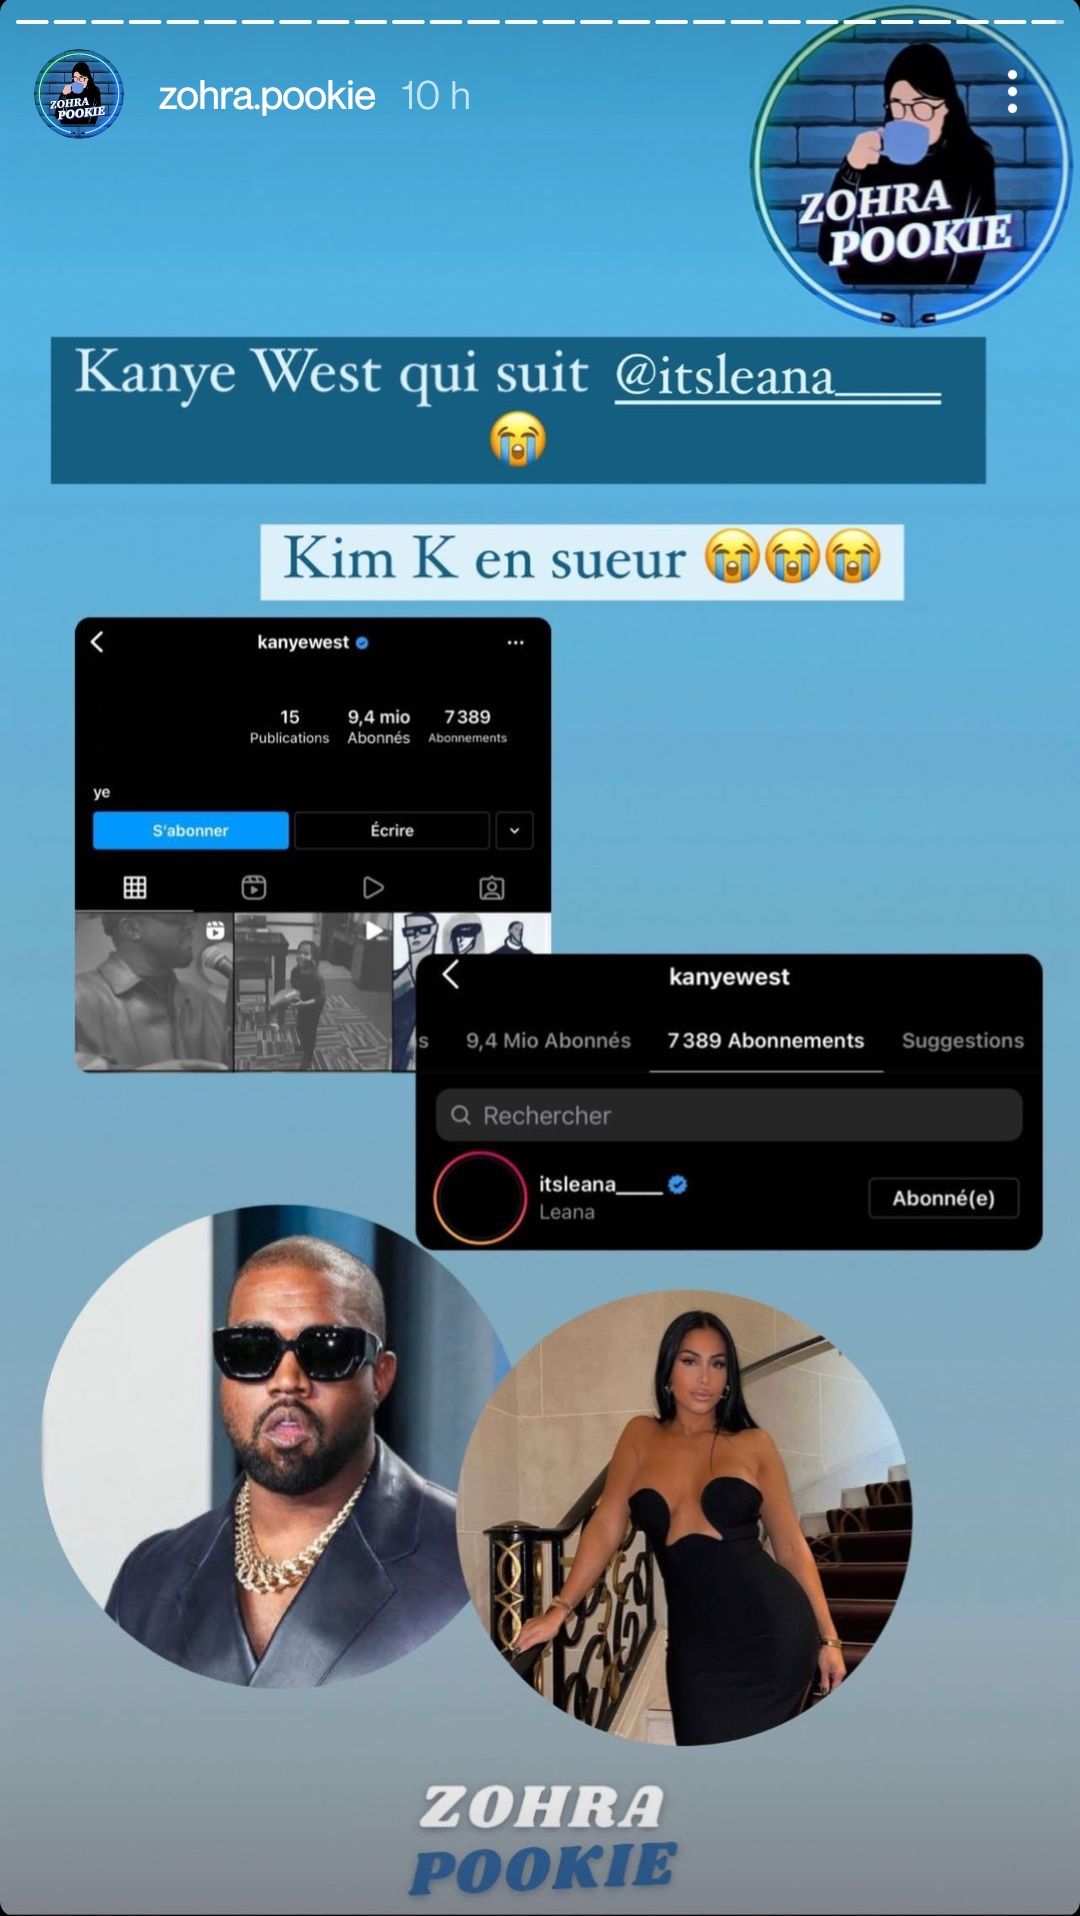  Kanye West suit Léana sur Instagram @Instagram